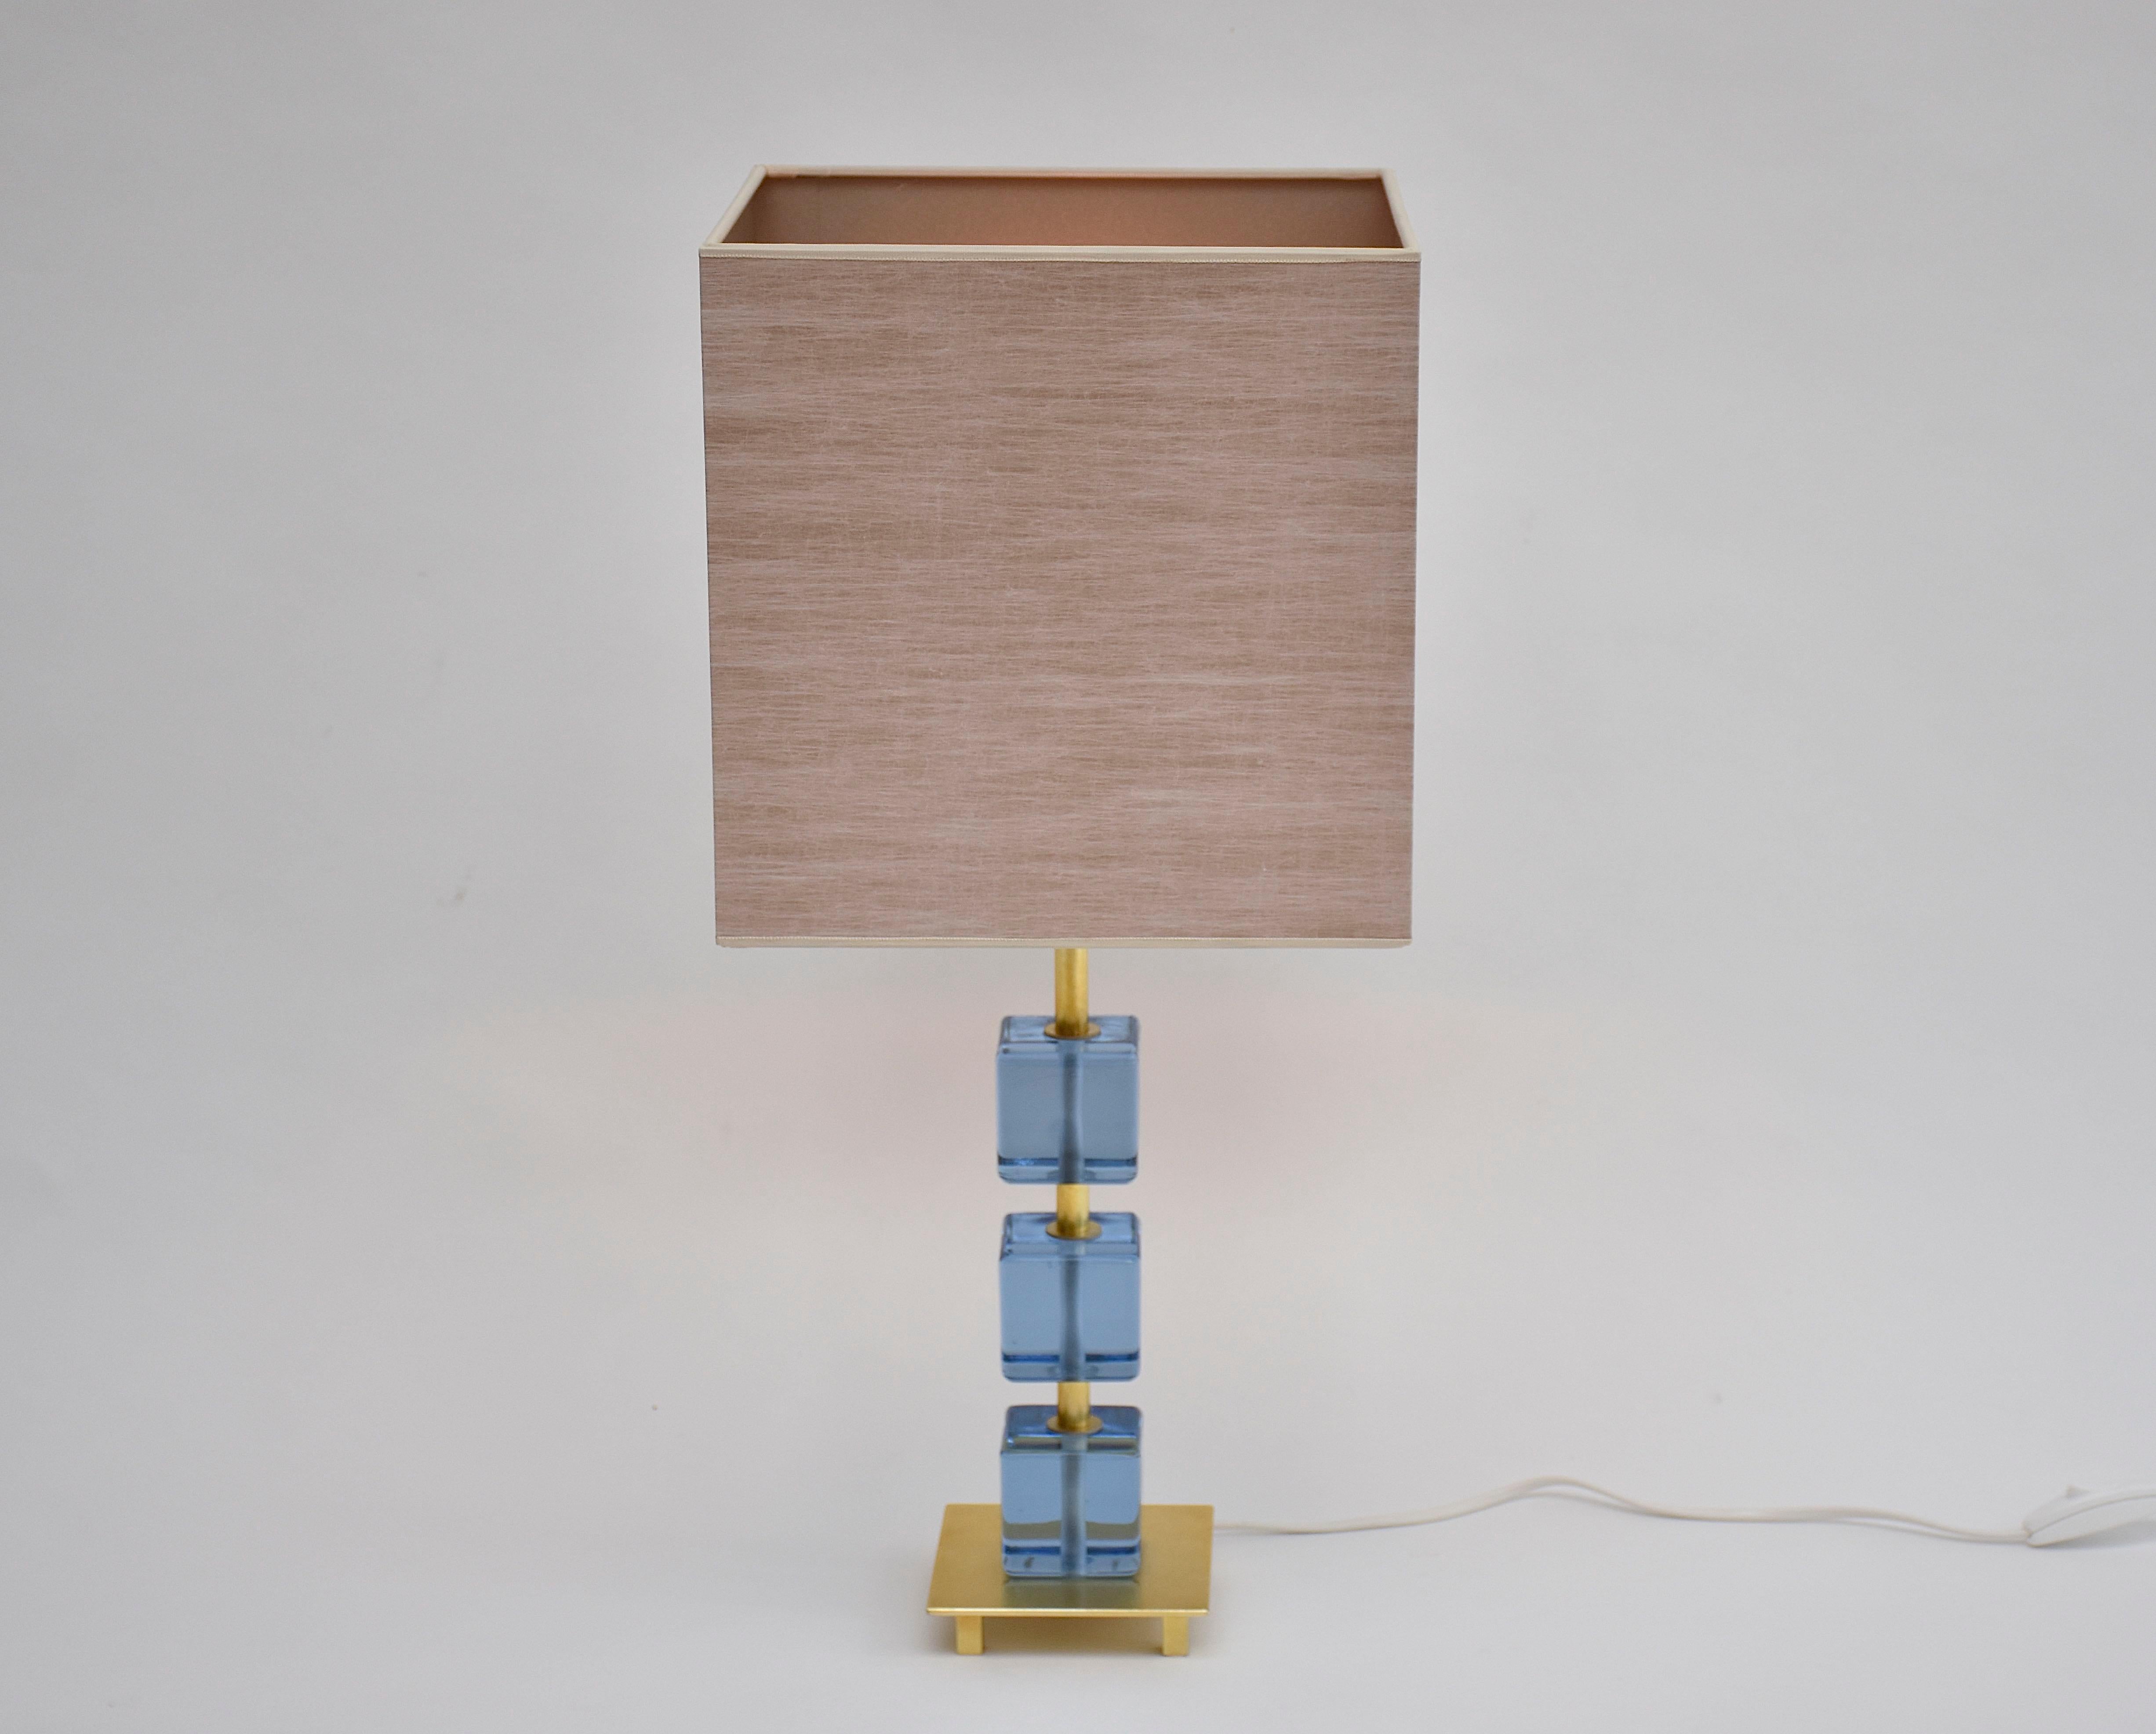 Magnifique lampe de table suédoise avec 3 blocs de verre bleu doux.
La lampe a été fabriquée à Malmö, en Suède, vers 1960.
Abat-jour neuf de haute qualité fait à la main inclus.

La hauteur de la lampe est mesurée avec l'abat-jour !
Dimensions